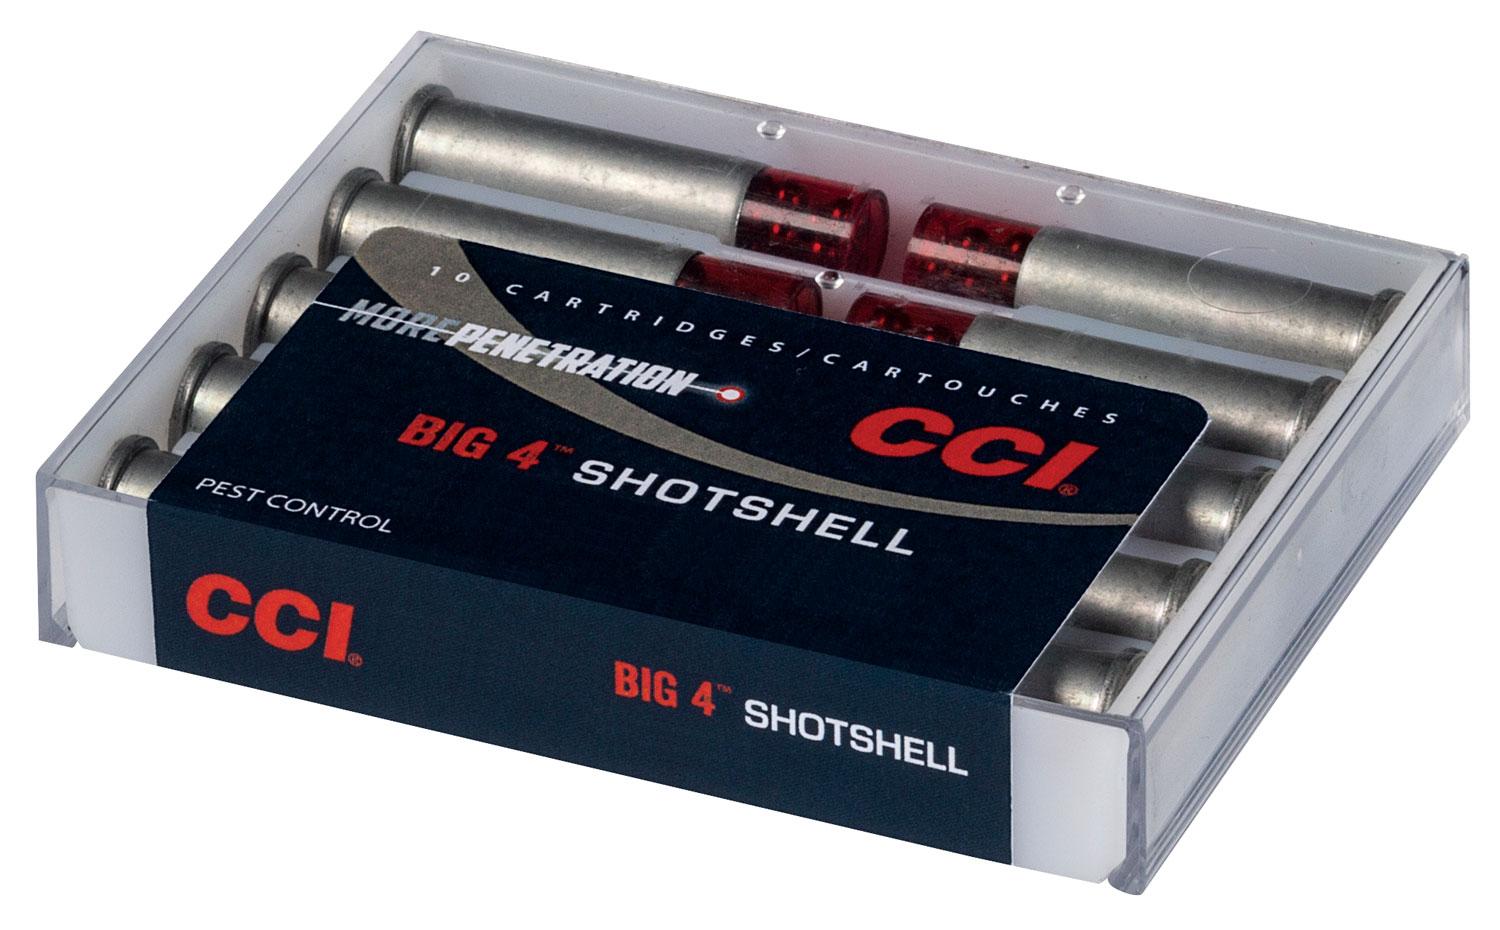  Cci 3712cc Big 4 Shotshell 9mm Luger 45 Gr 1000 Fps Shotshell # 4 Shot 10 Bx/20 Cs